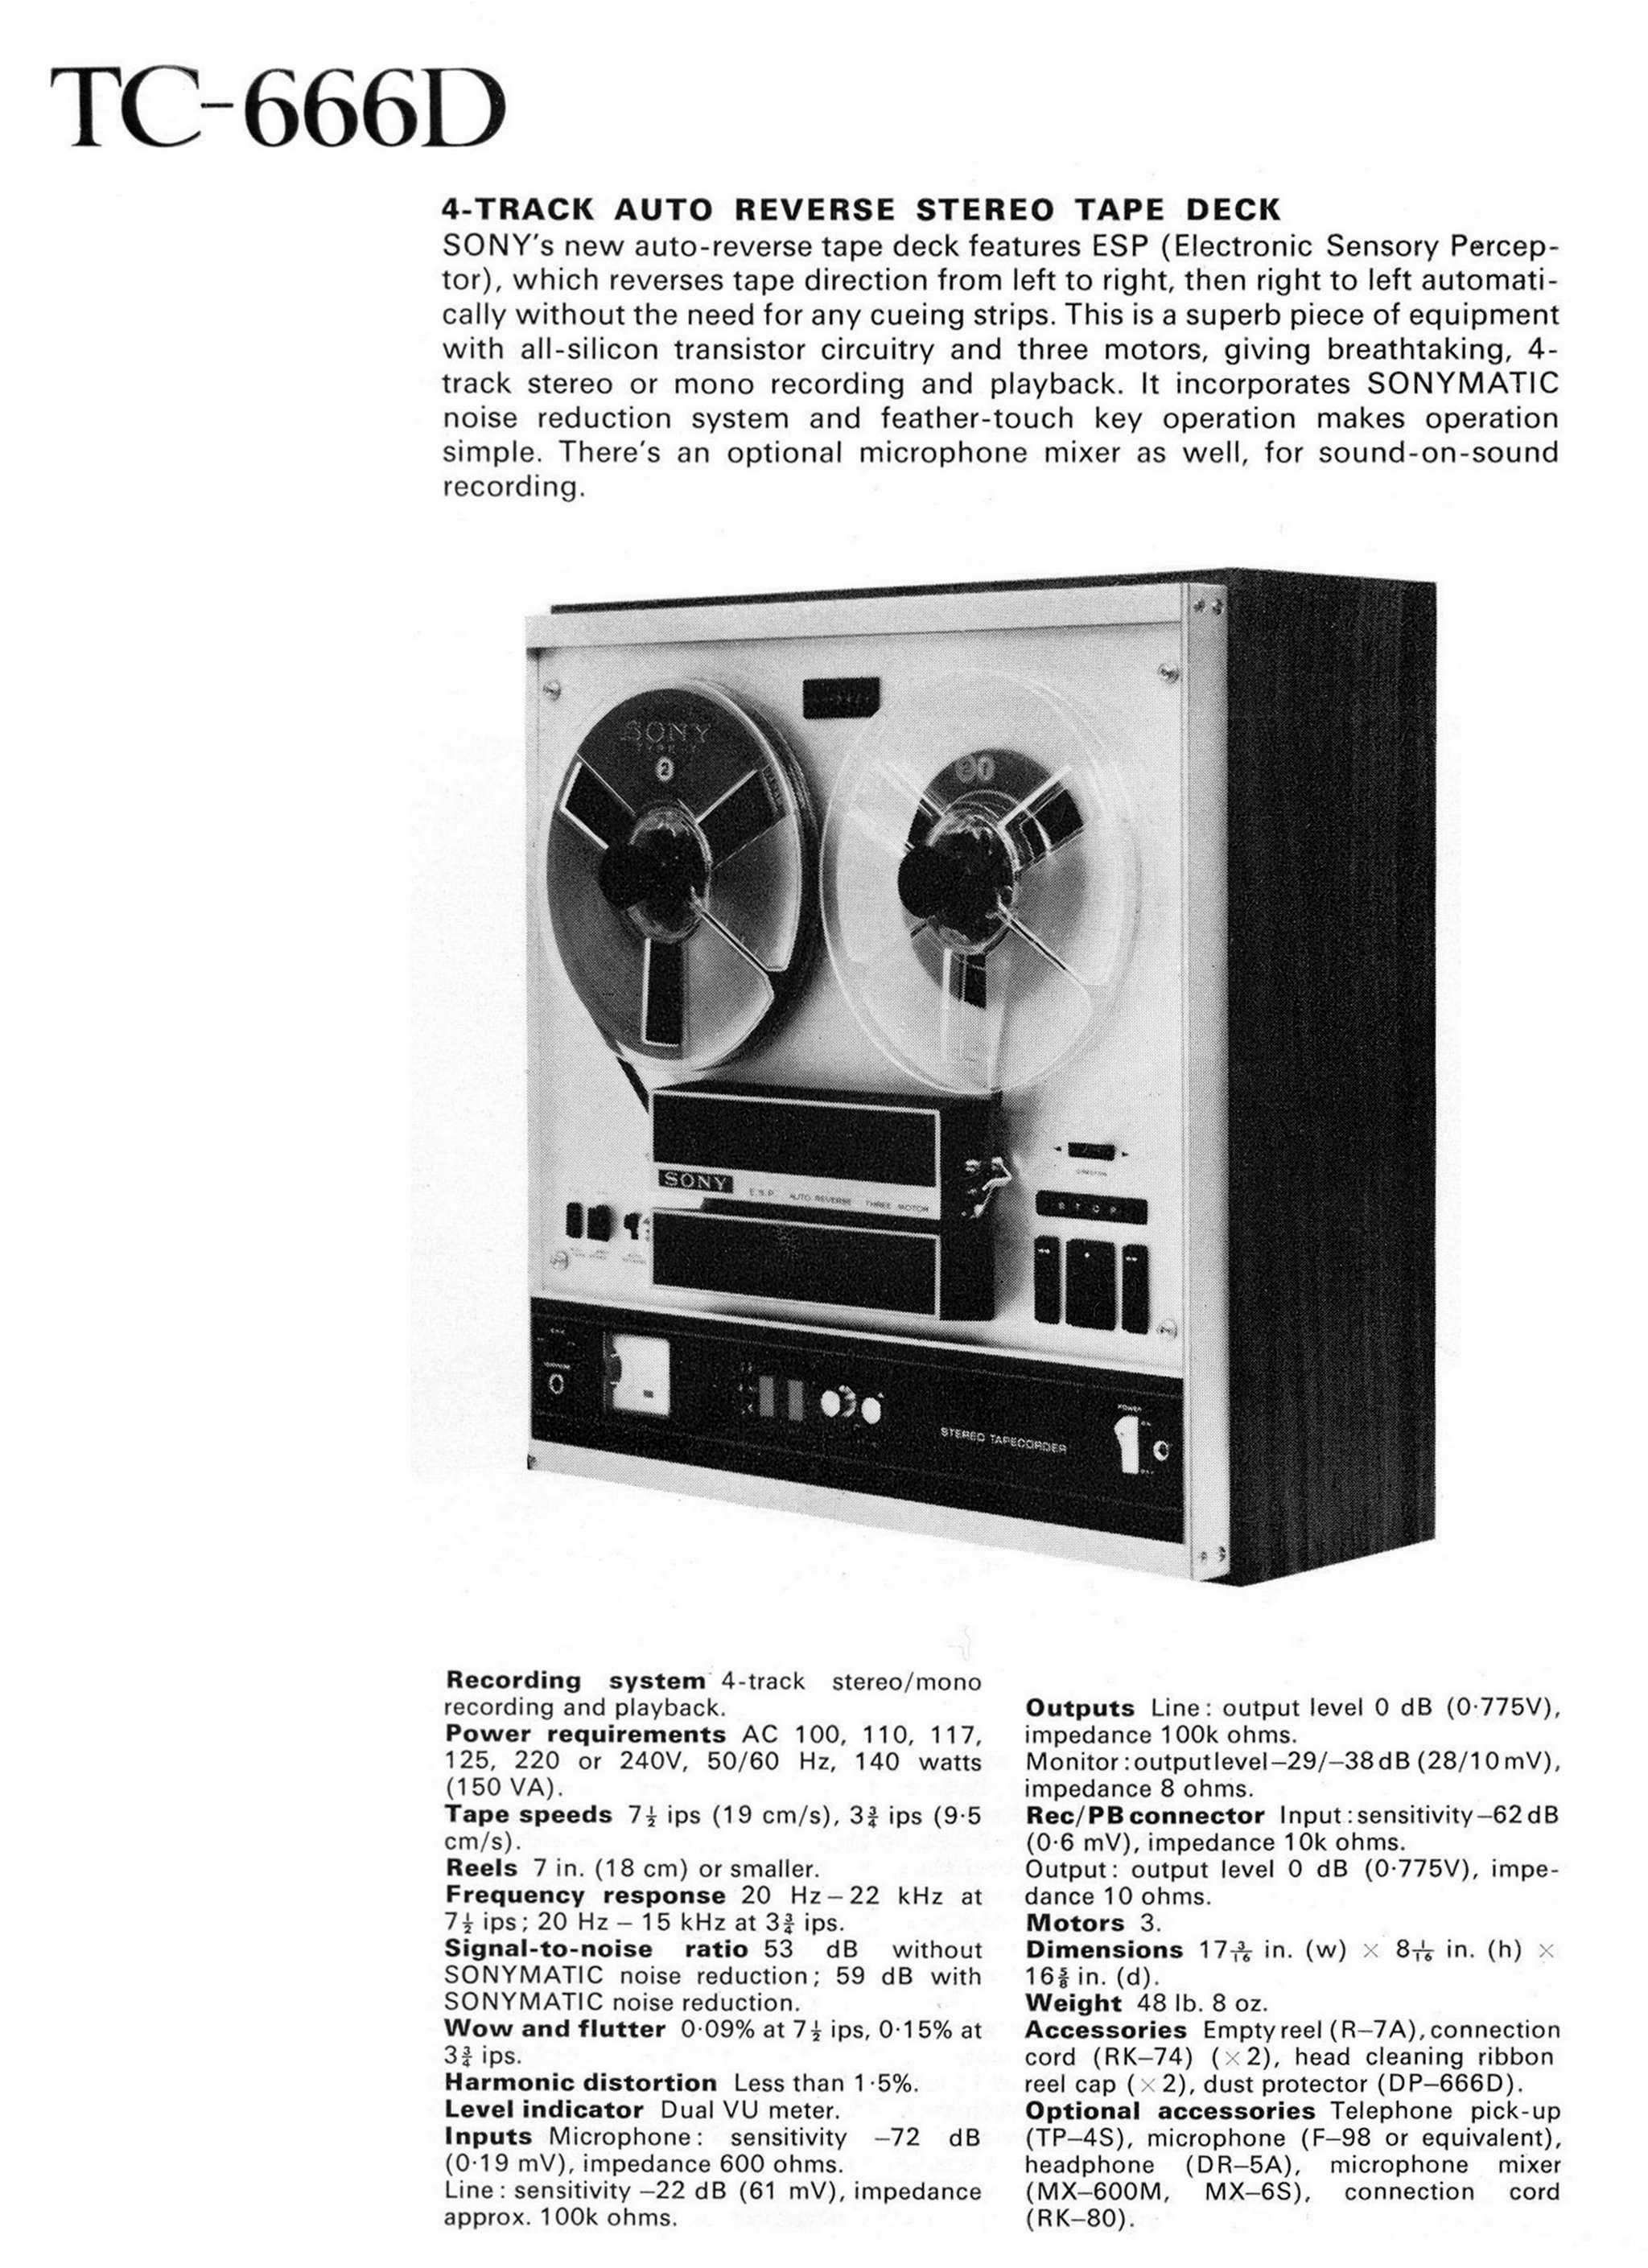 Sony TC-666 D-Prospekt-1971.jpg